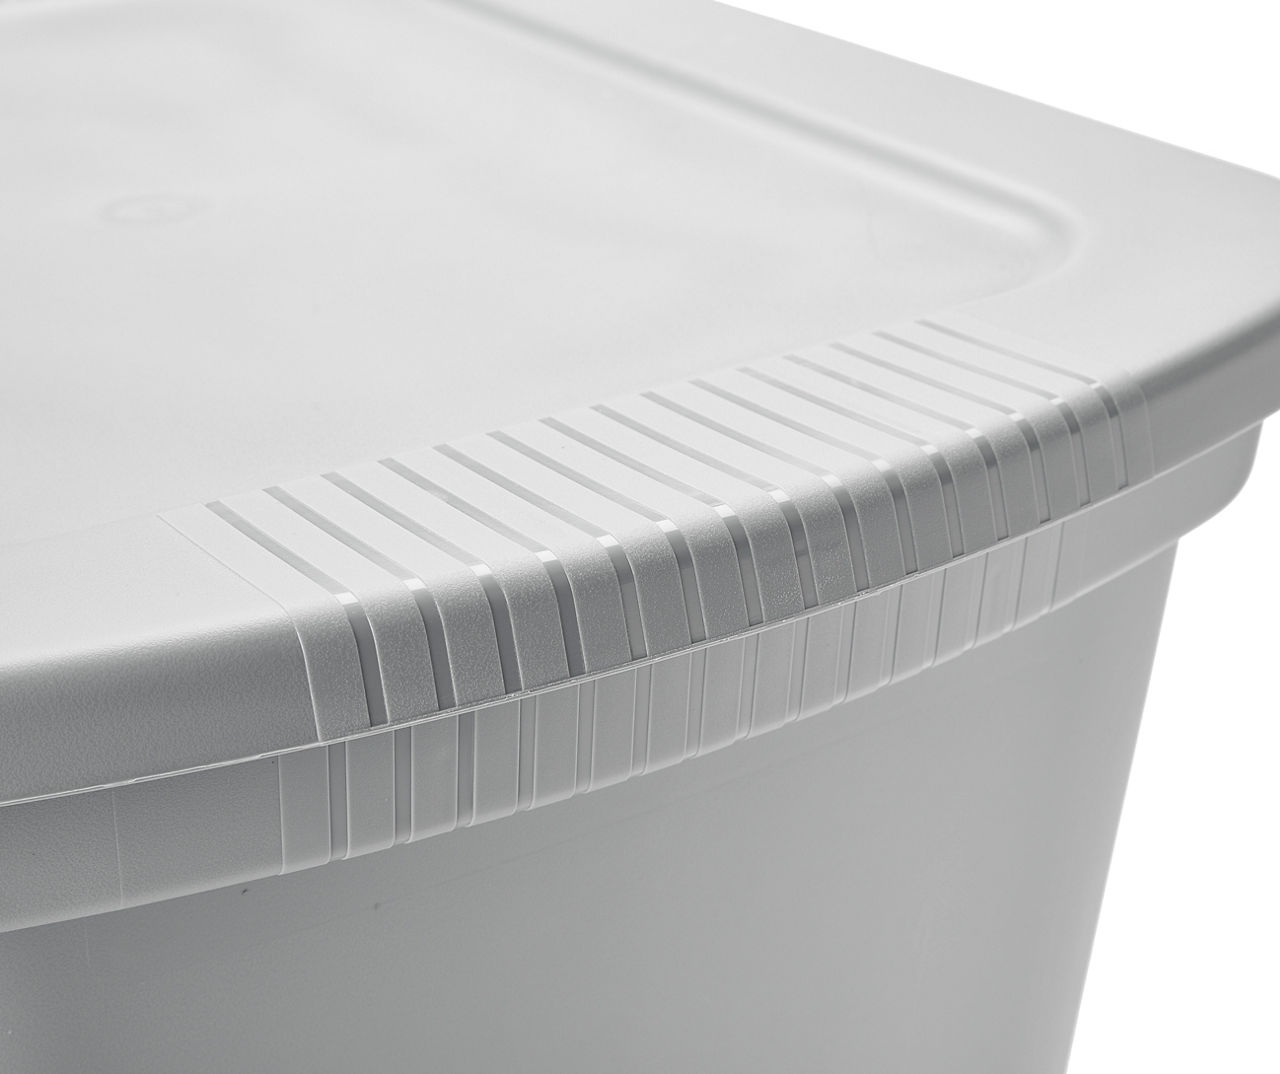 30 Gallon Tote Box Plastic, Titanium,Sterilite,Storage Containers